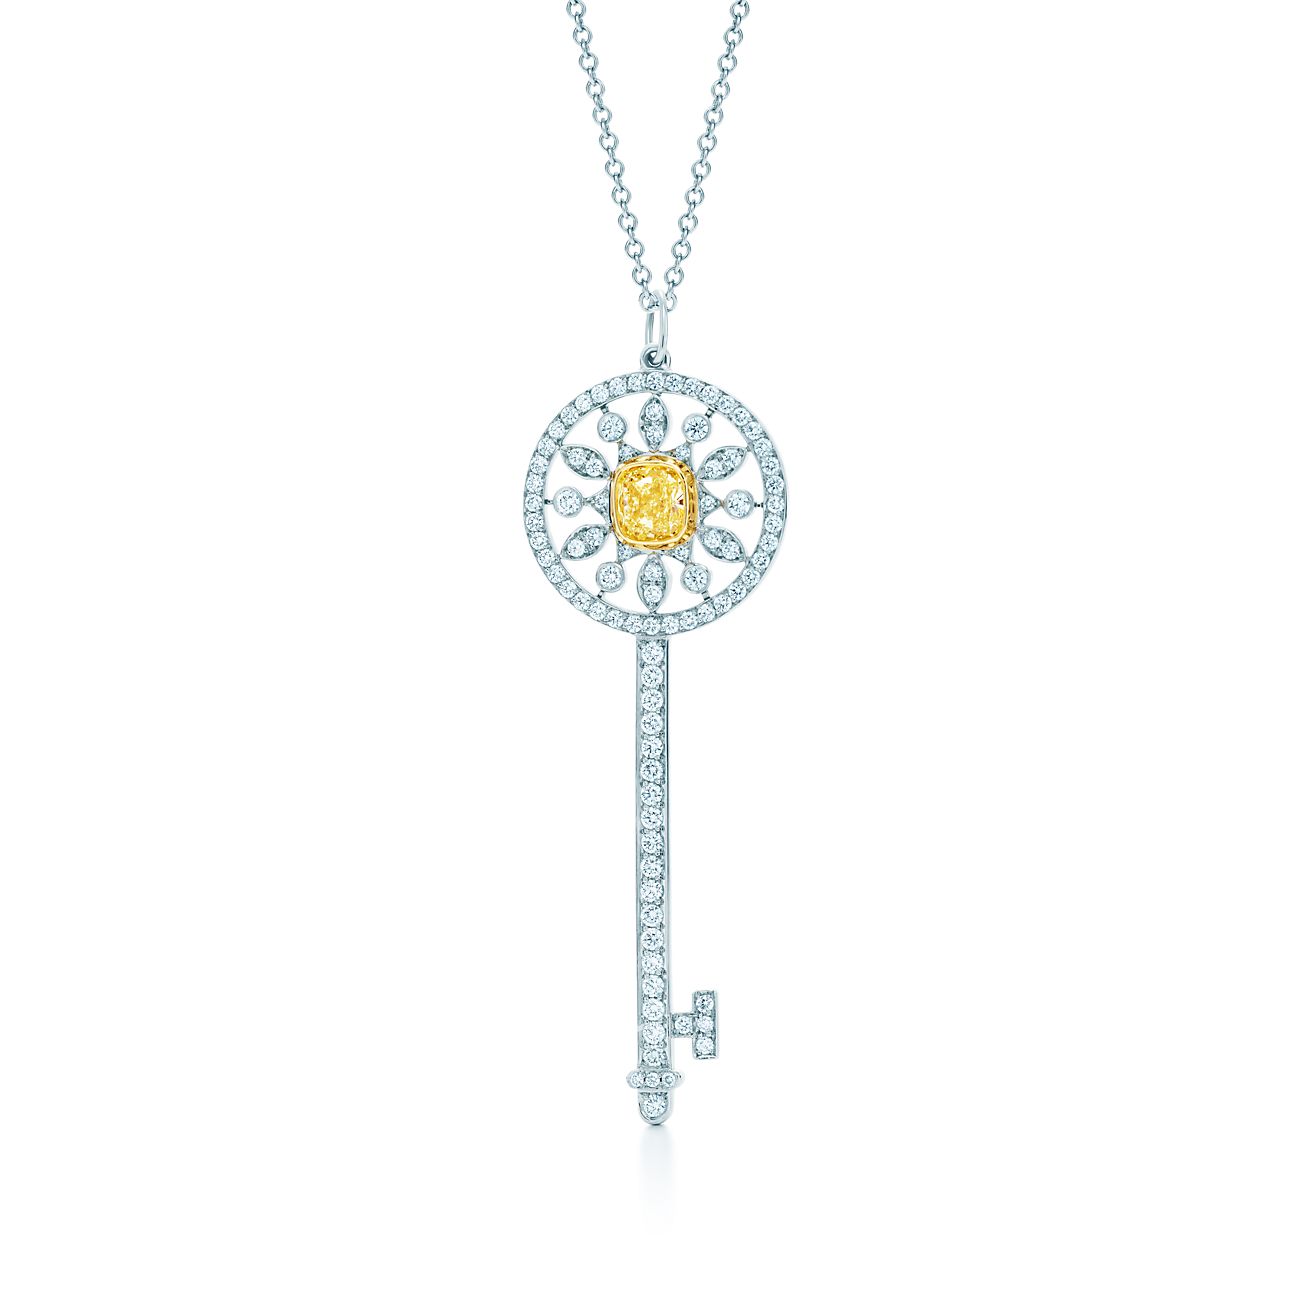 fifadata.com  Tiffany key, Tiffany key necklace, Key pendant